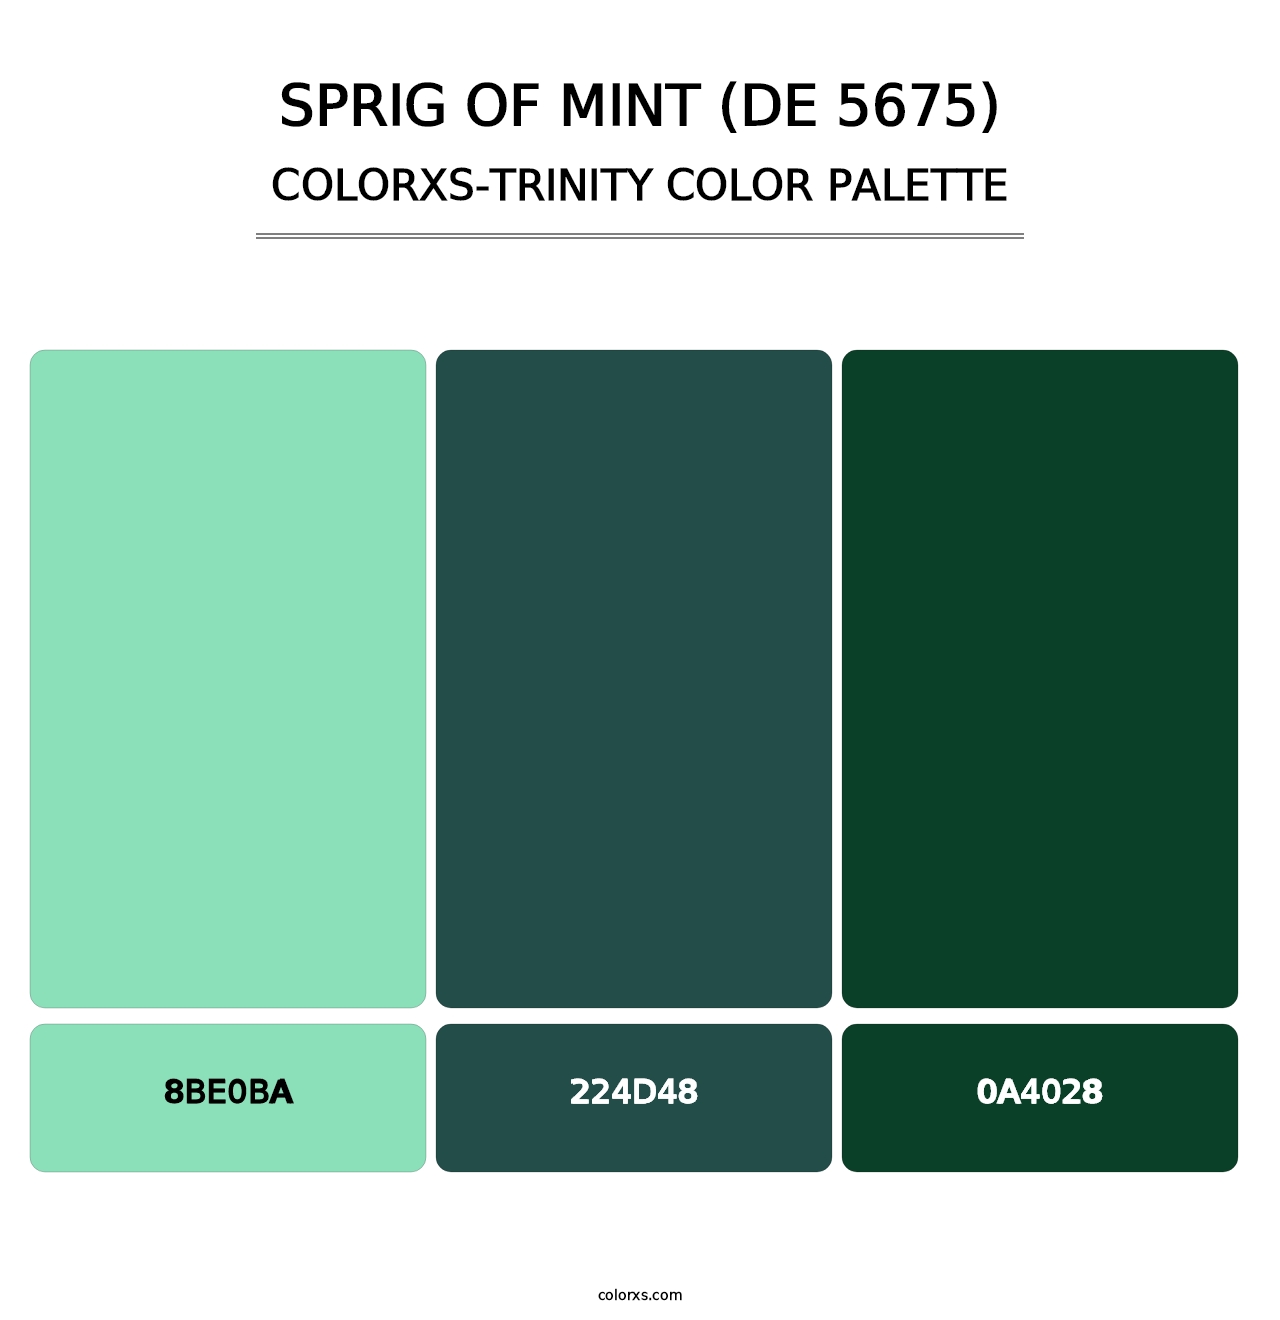 Sprig of Mint (DE 5675) - Colorxs Trinity Palette